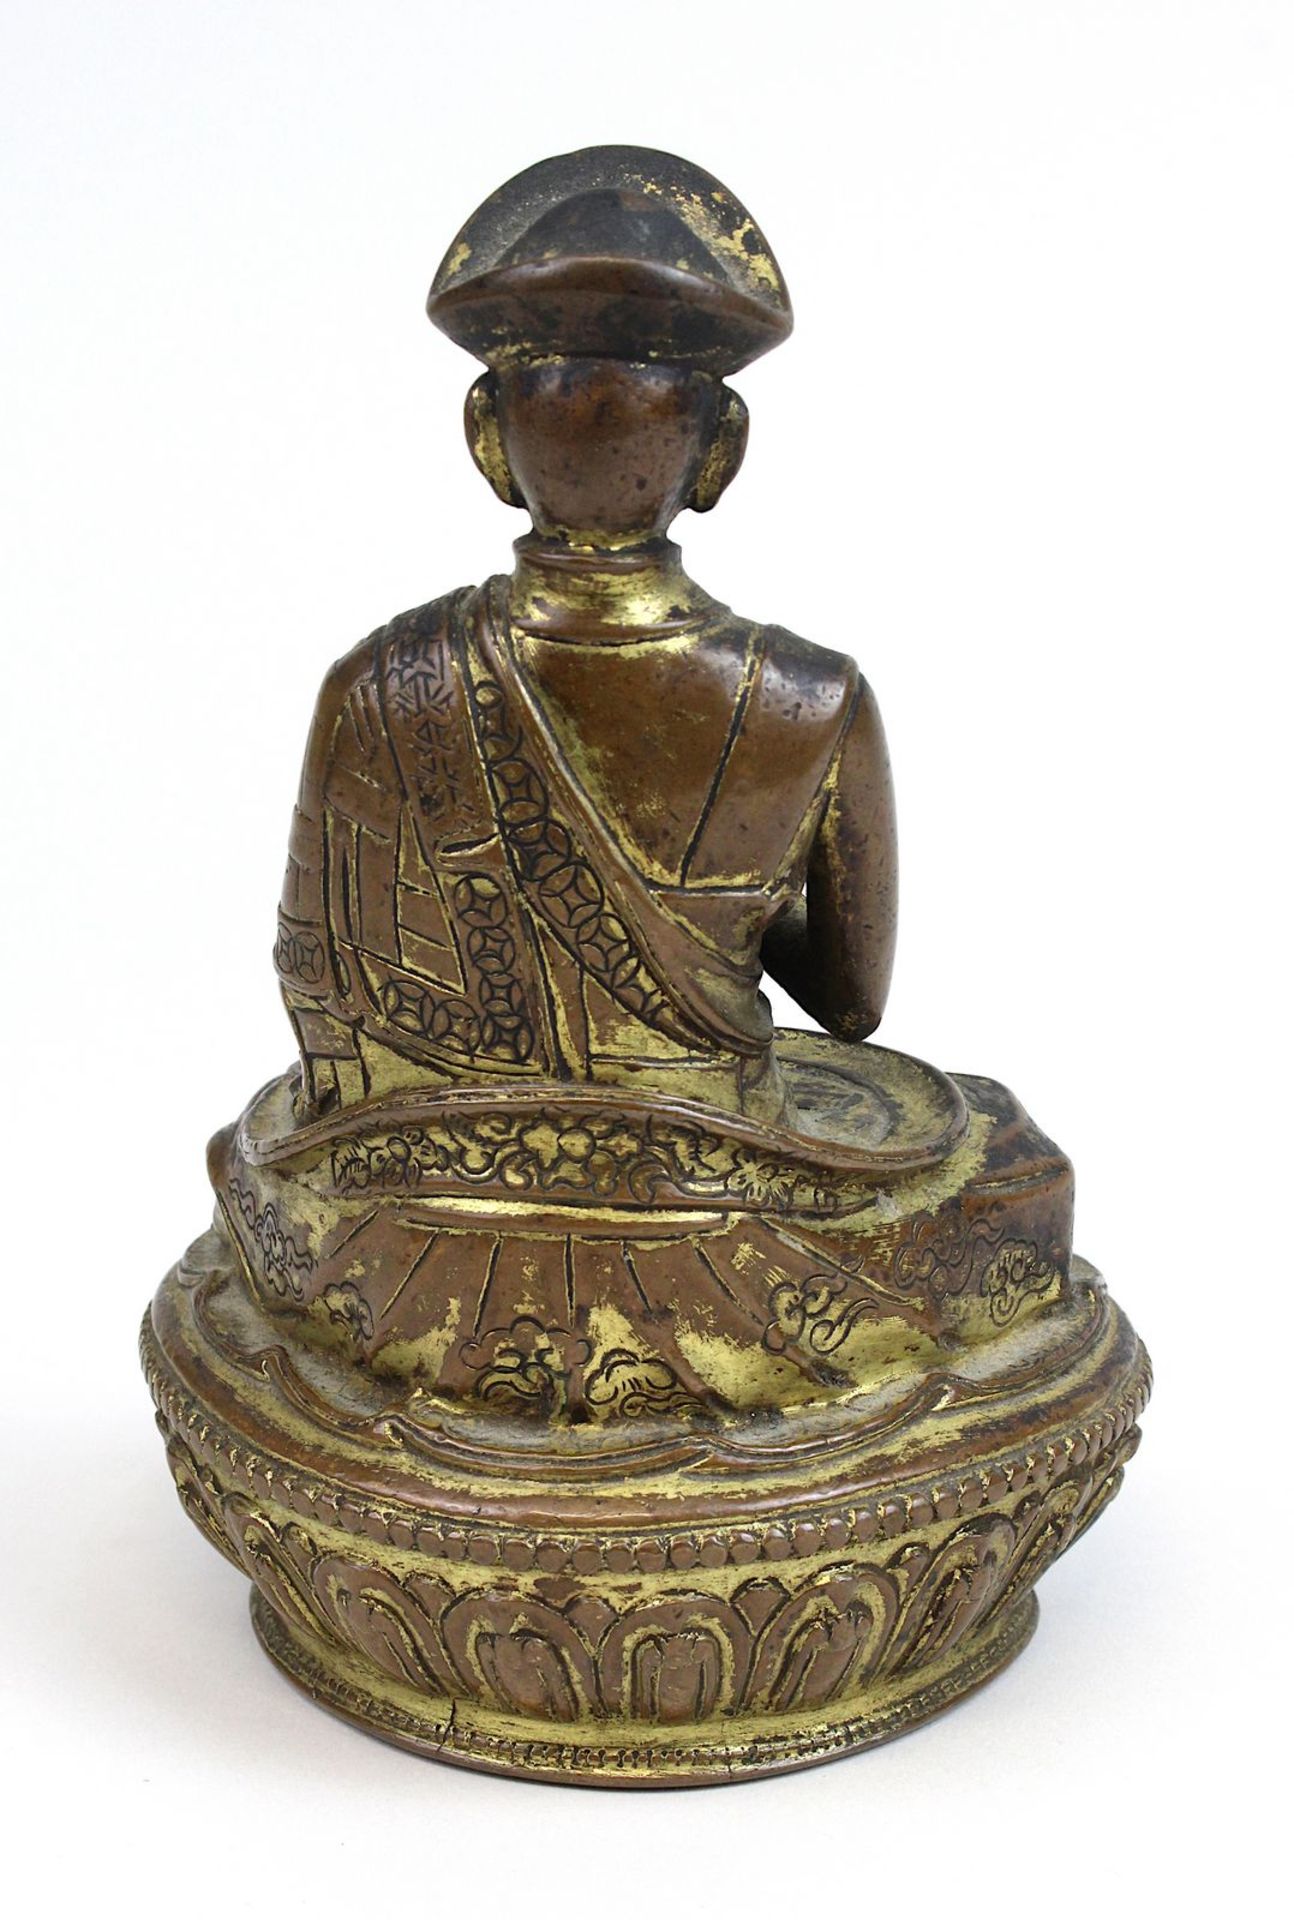 Lama aus Bronze, Himalaya 17 Jh., nach Vorbild eines Heiligen aus dem 11 Jh., Bronze mit Resten - Bild 3 aus 5